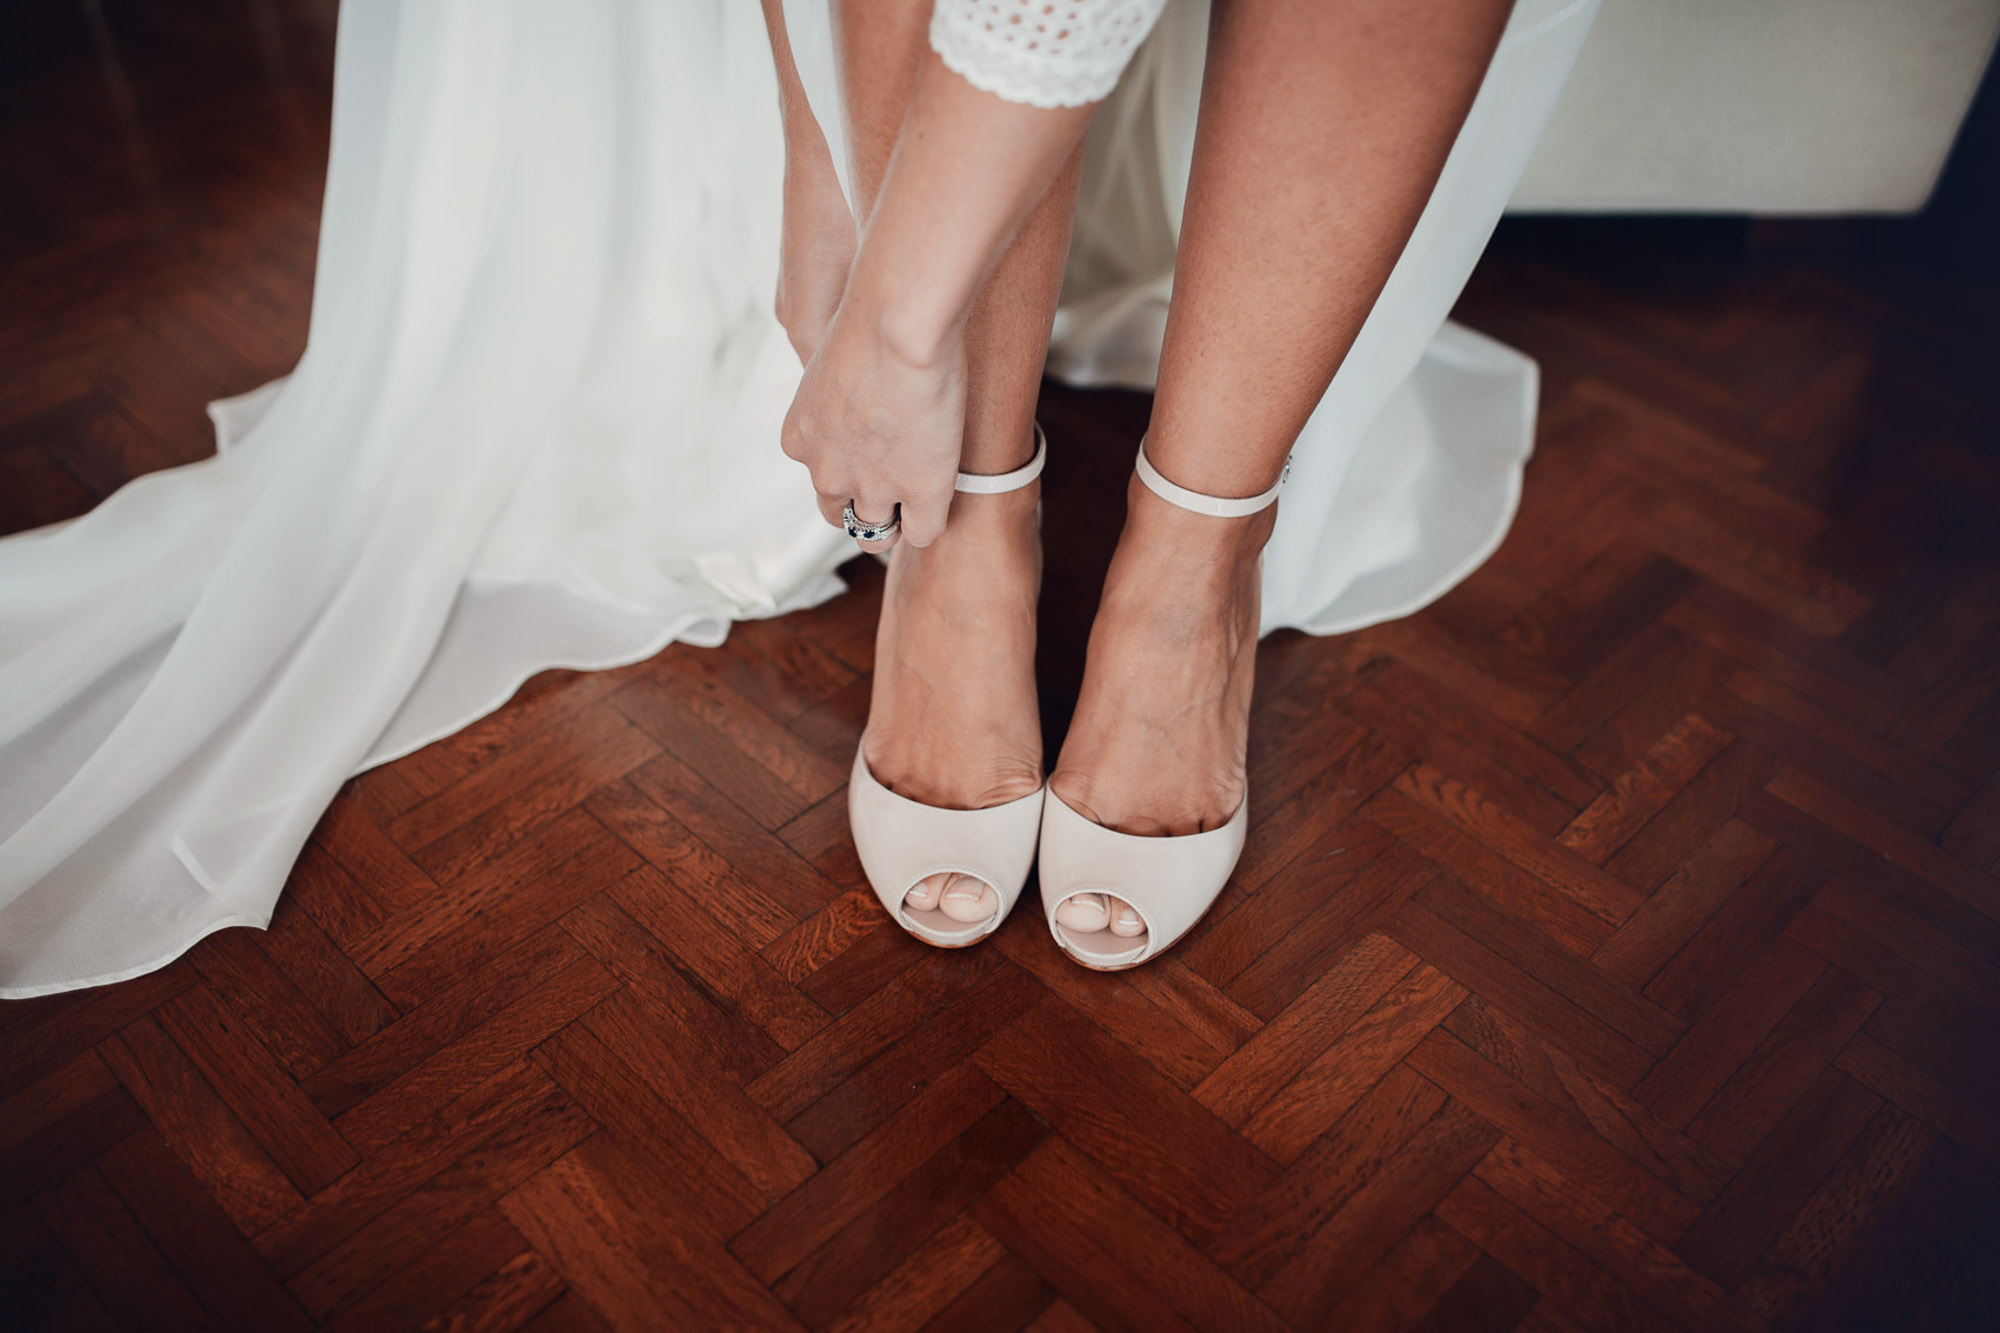 detalle zapatos tacones novia vestido blanco madera